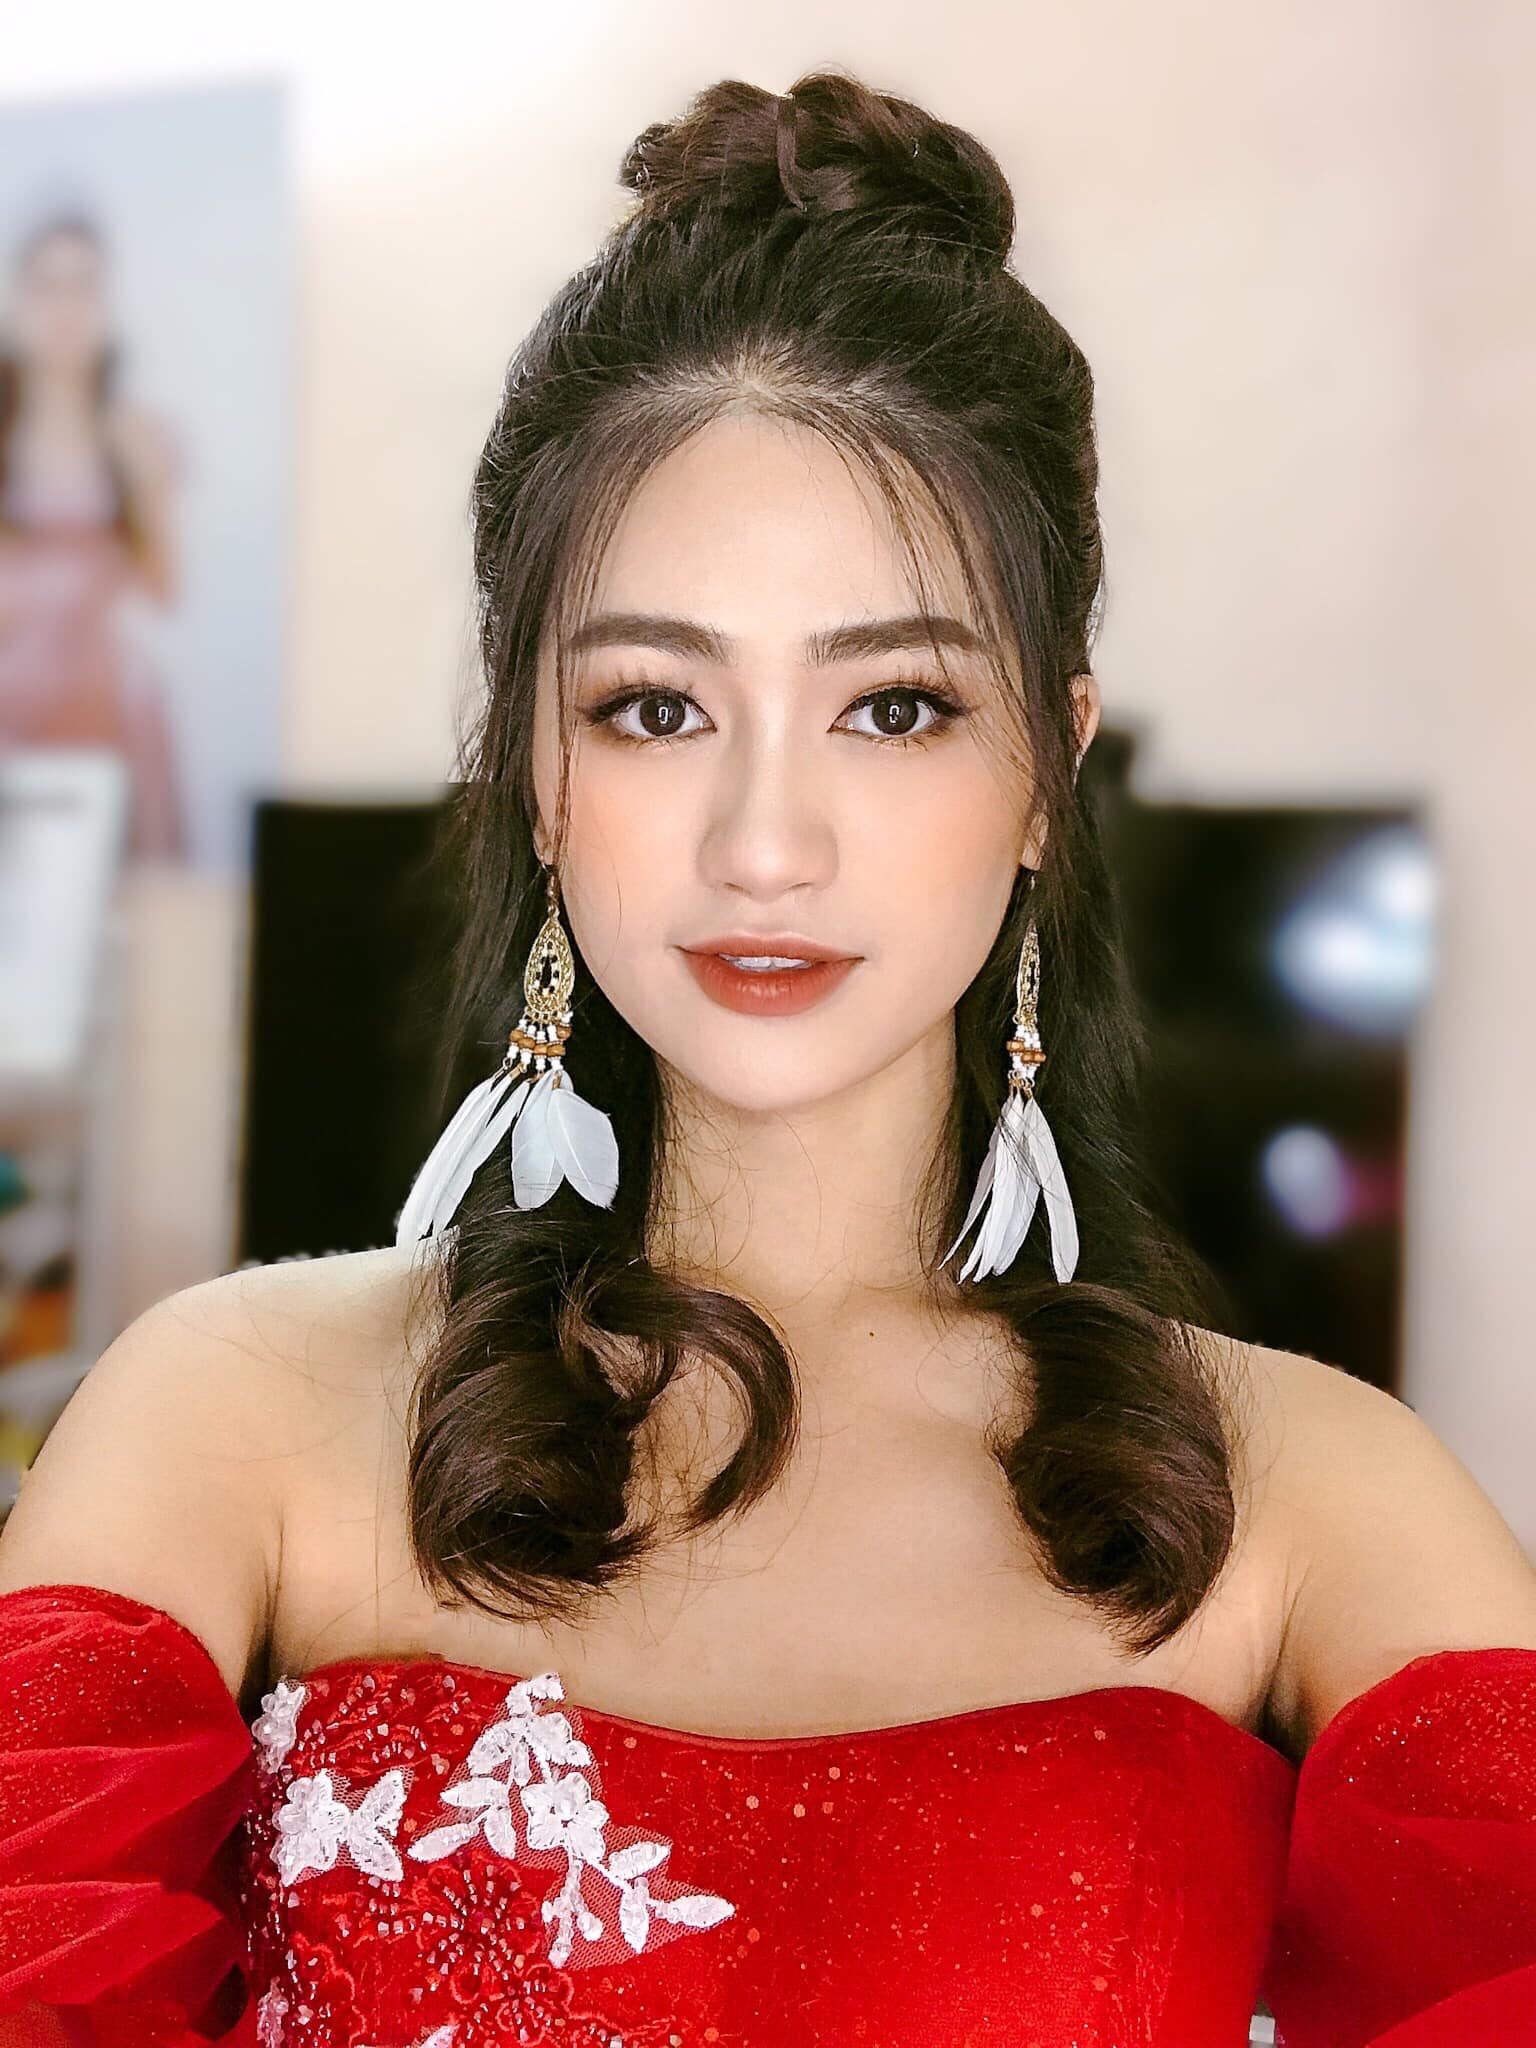 Cận cảnh nhan sắc người đẹp Hoa hậu Việt Nam dẫn bản tin VTV - Ảnh 8.